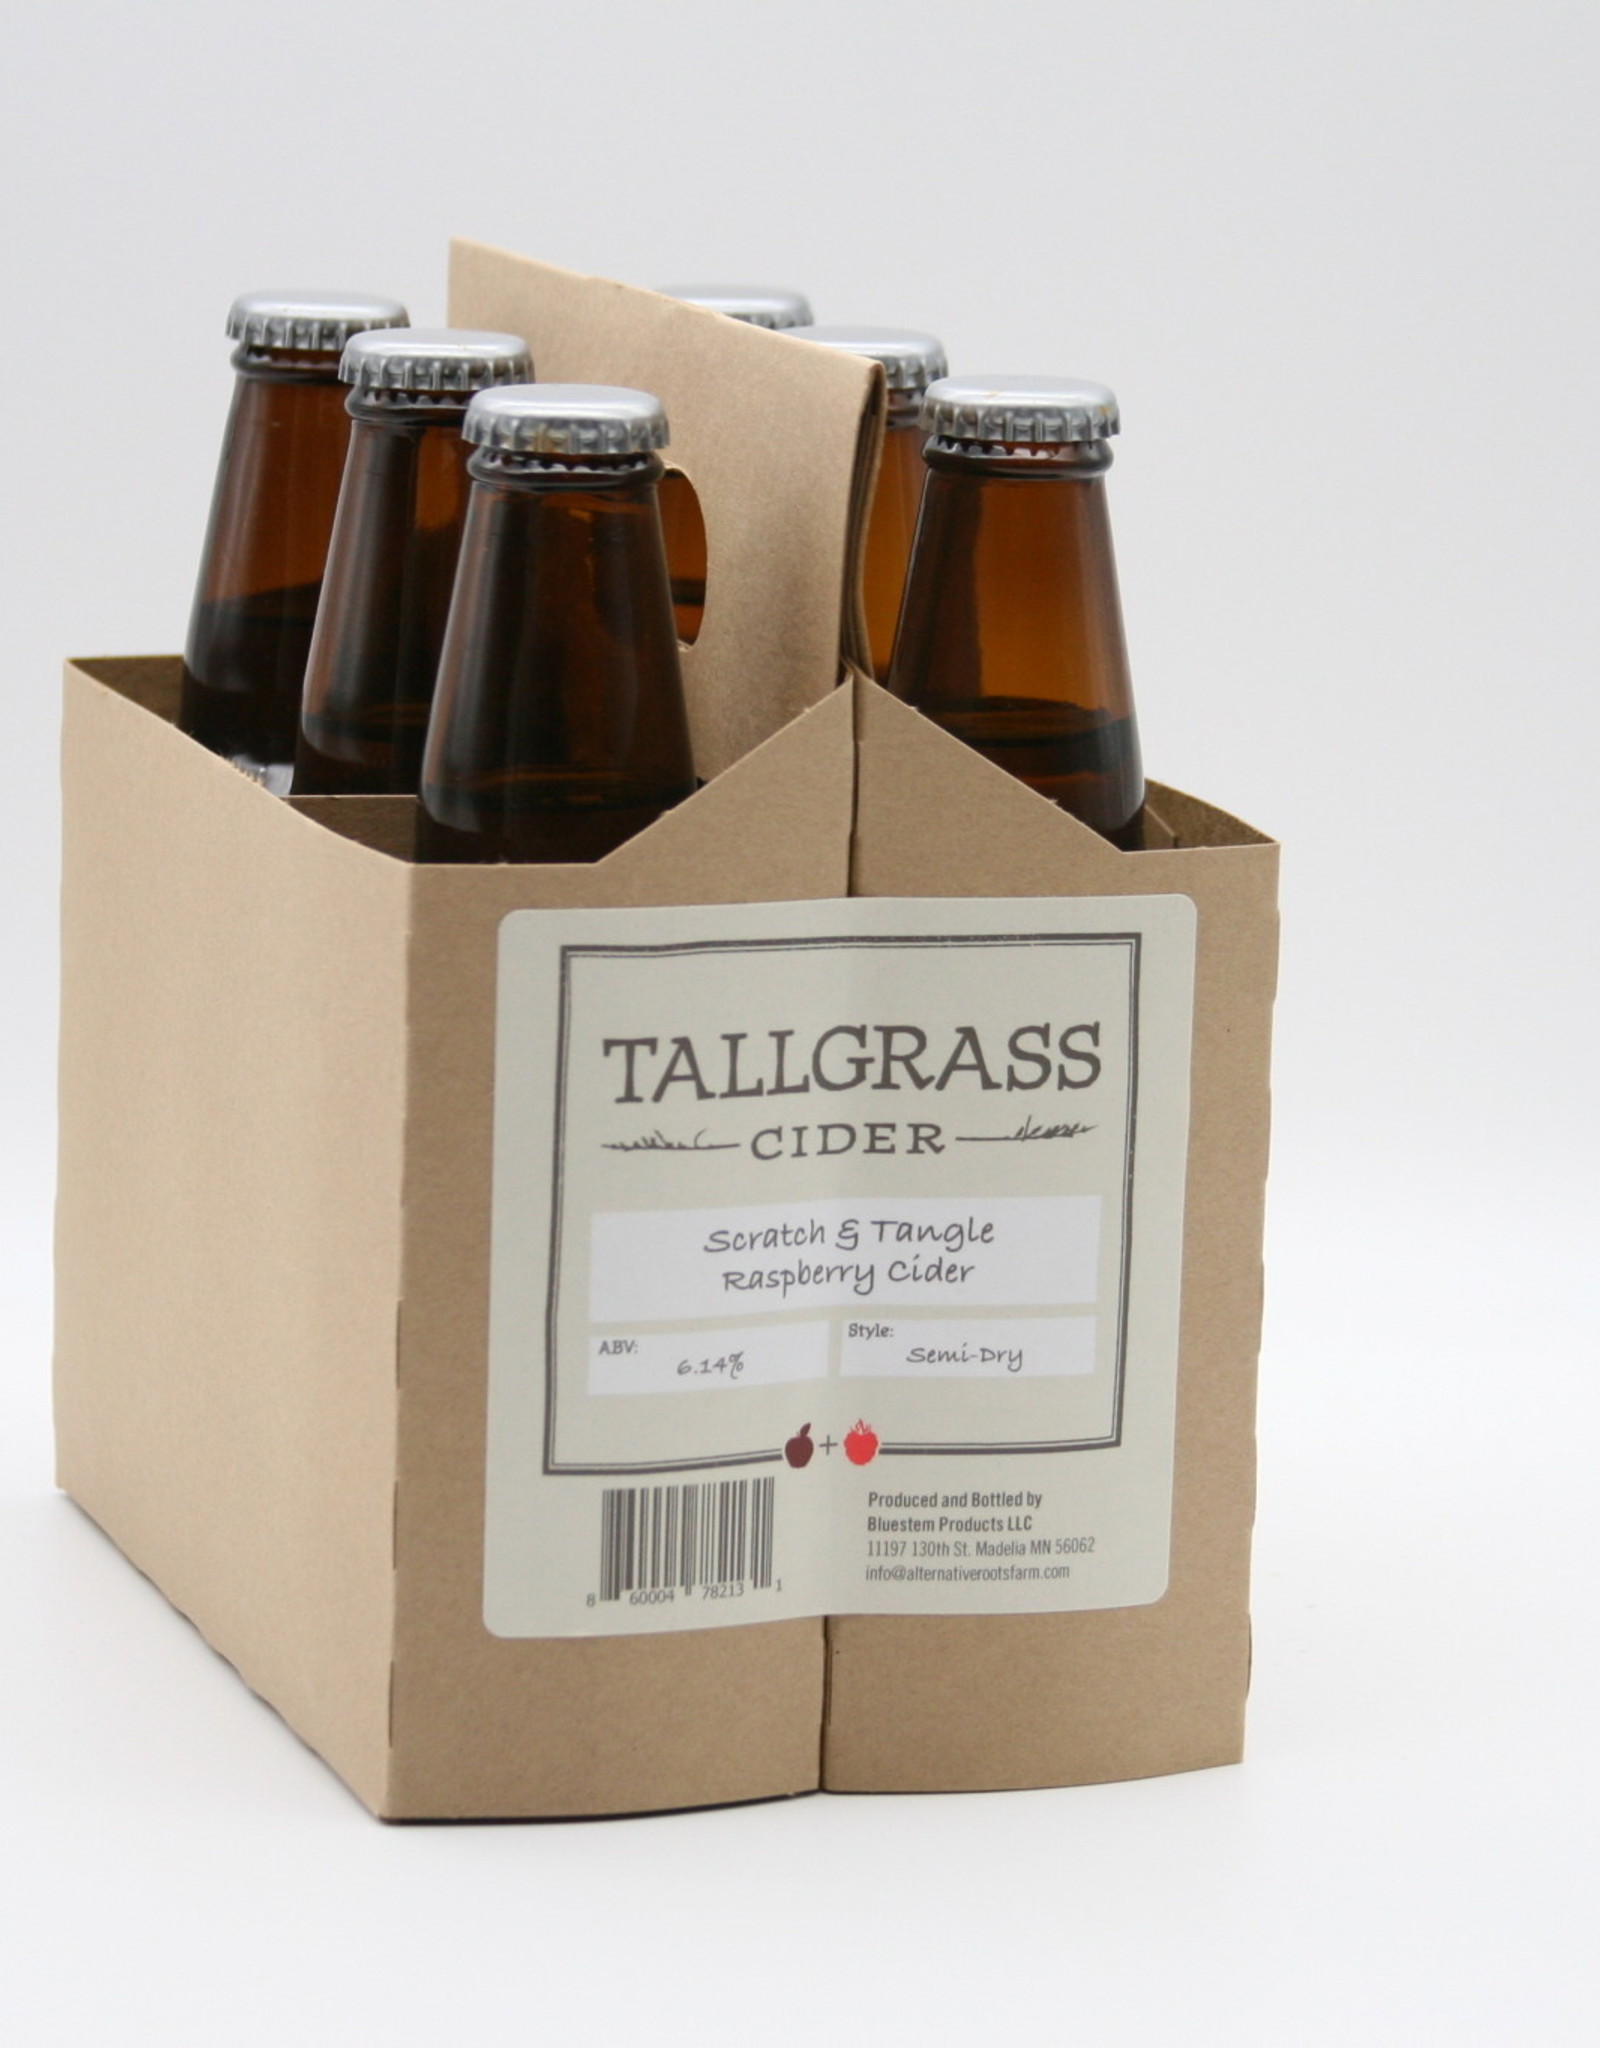 Tallgrass Scratch & Tangle 6x12 oz bottles